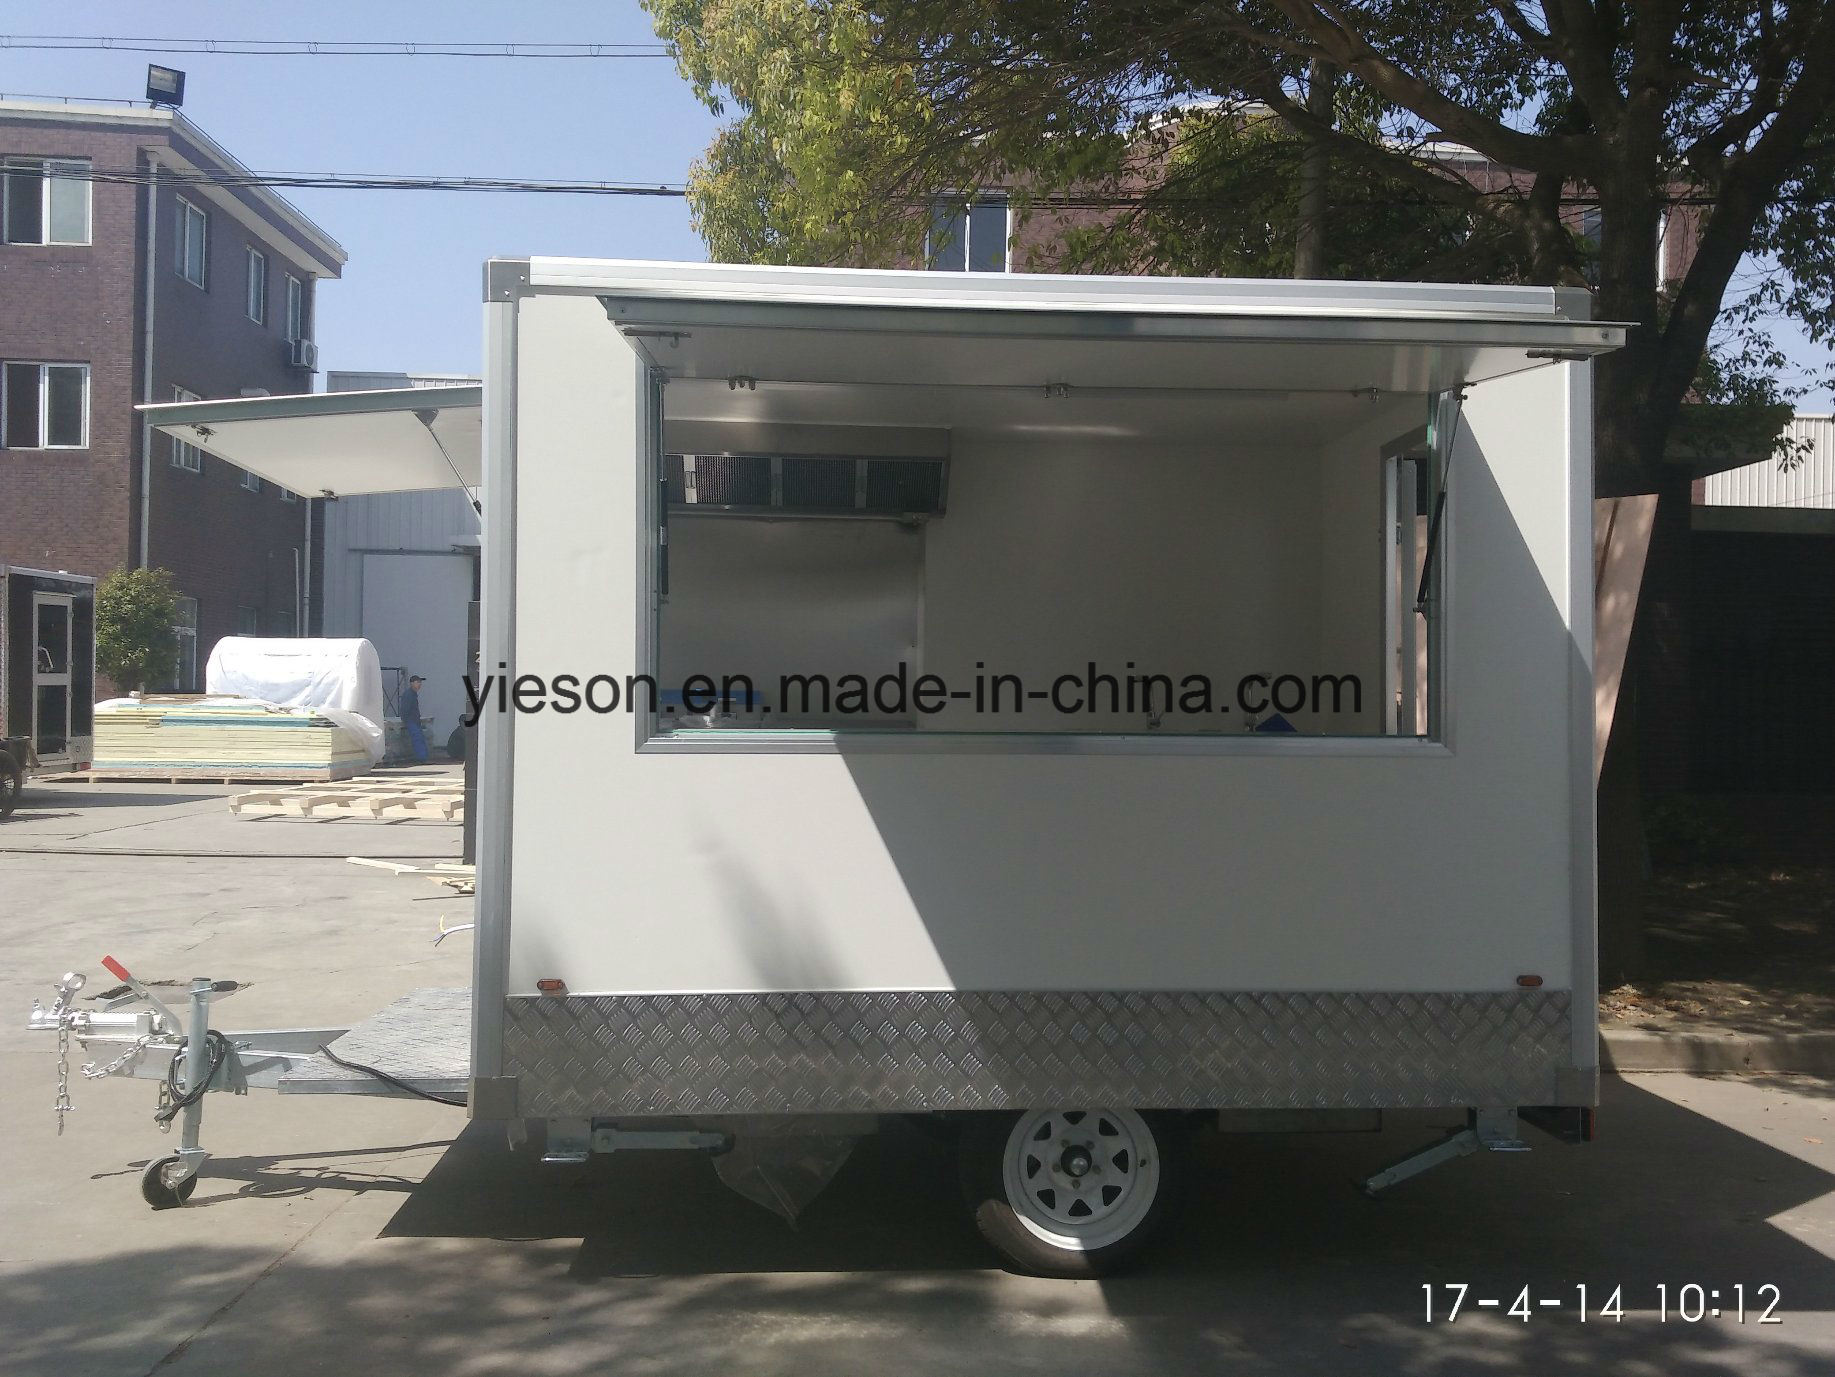 Yieson Custom Mobile Food Van for Sale